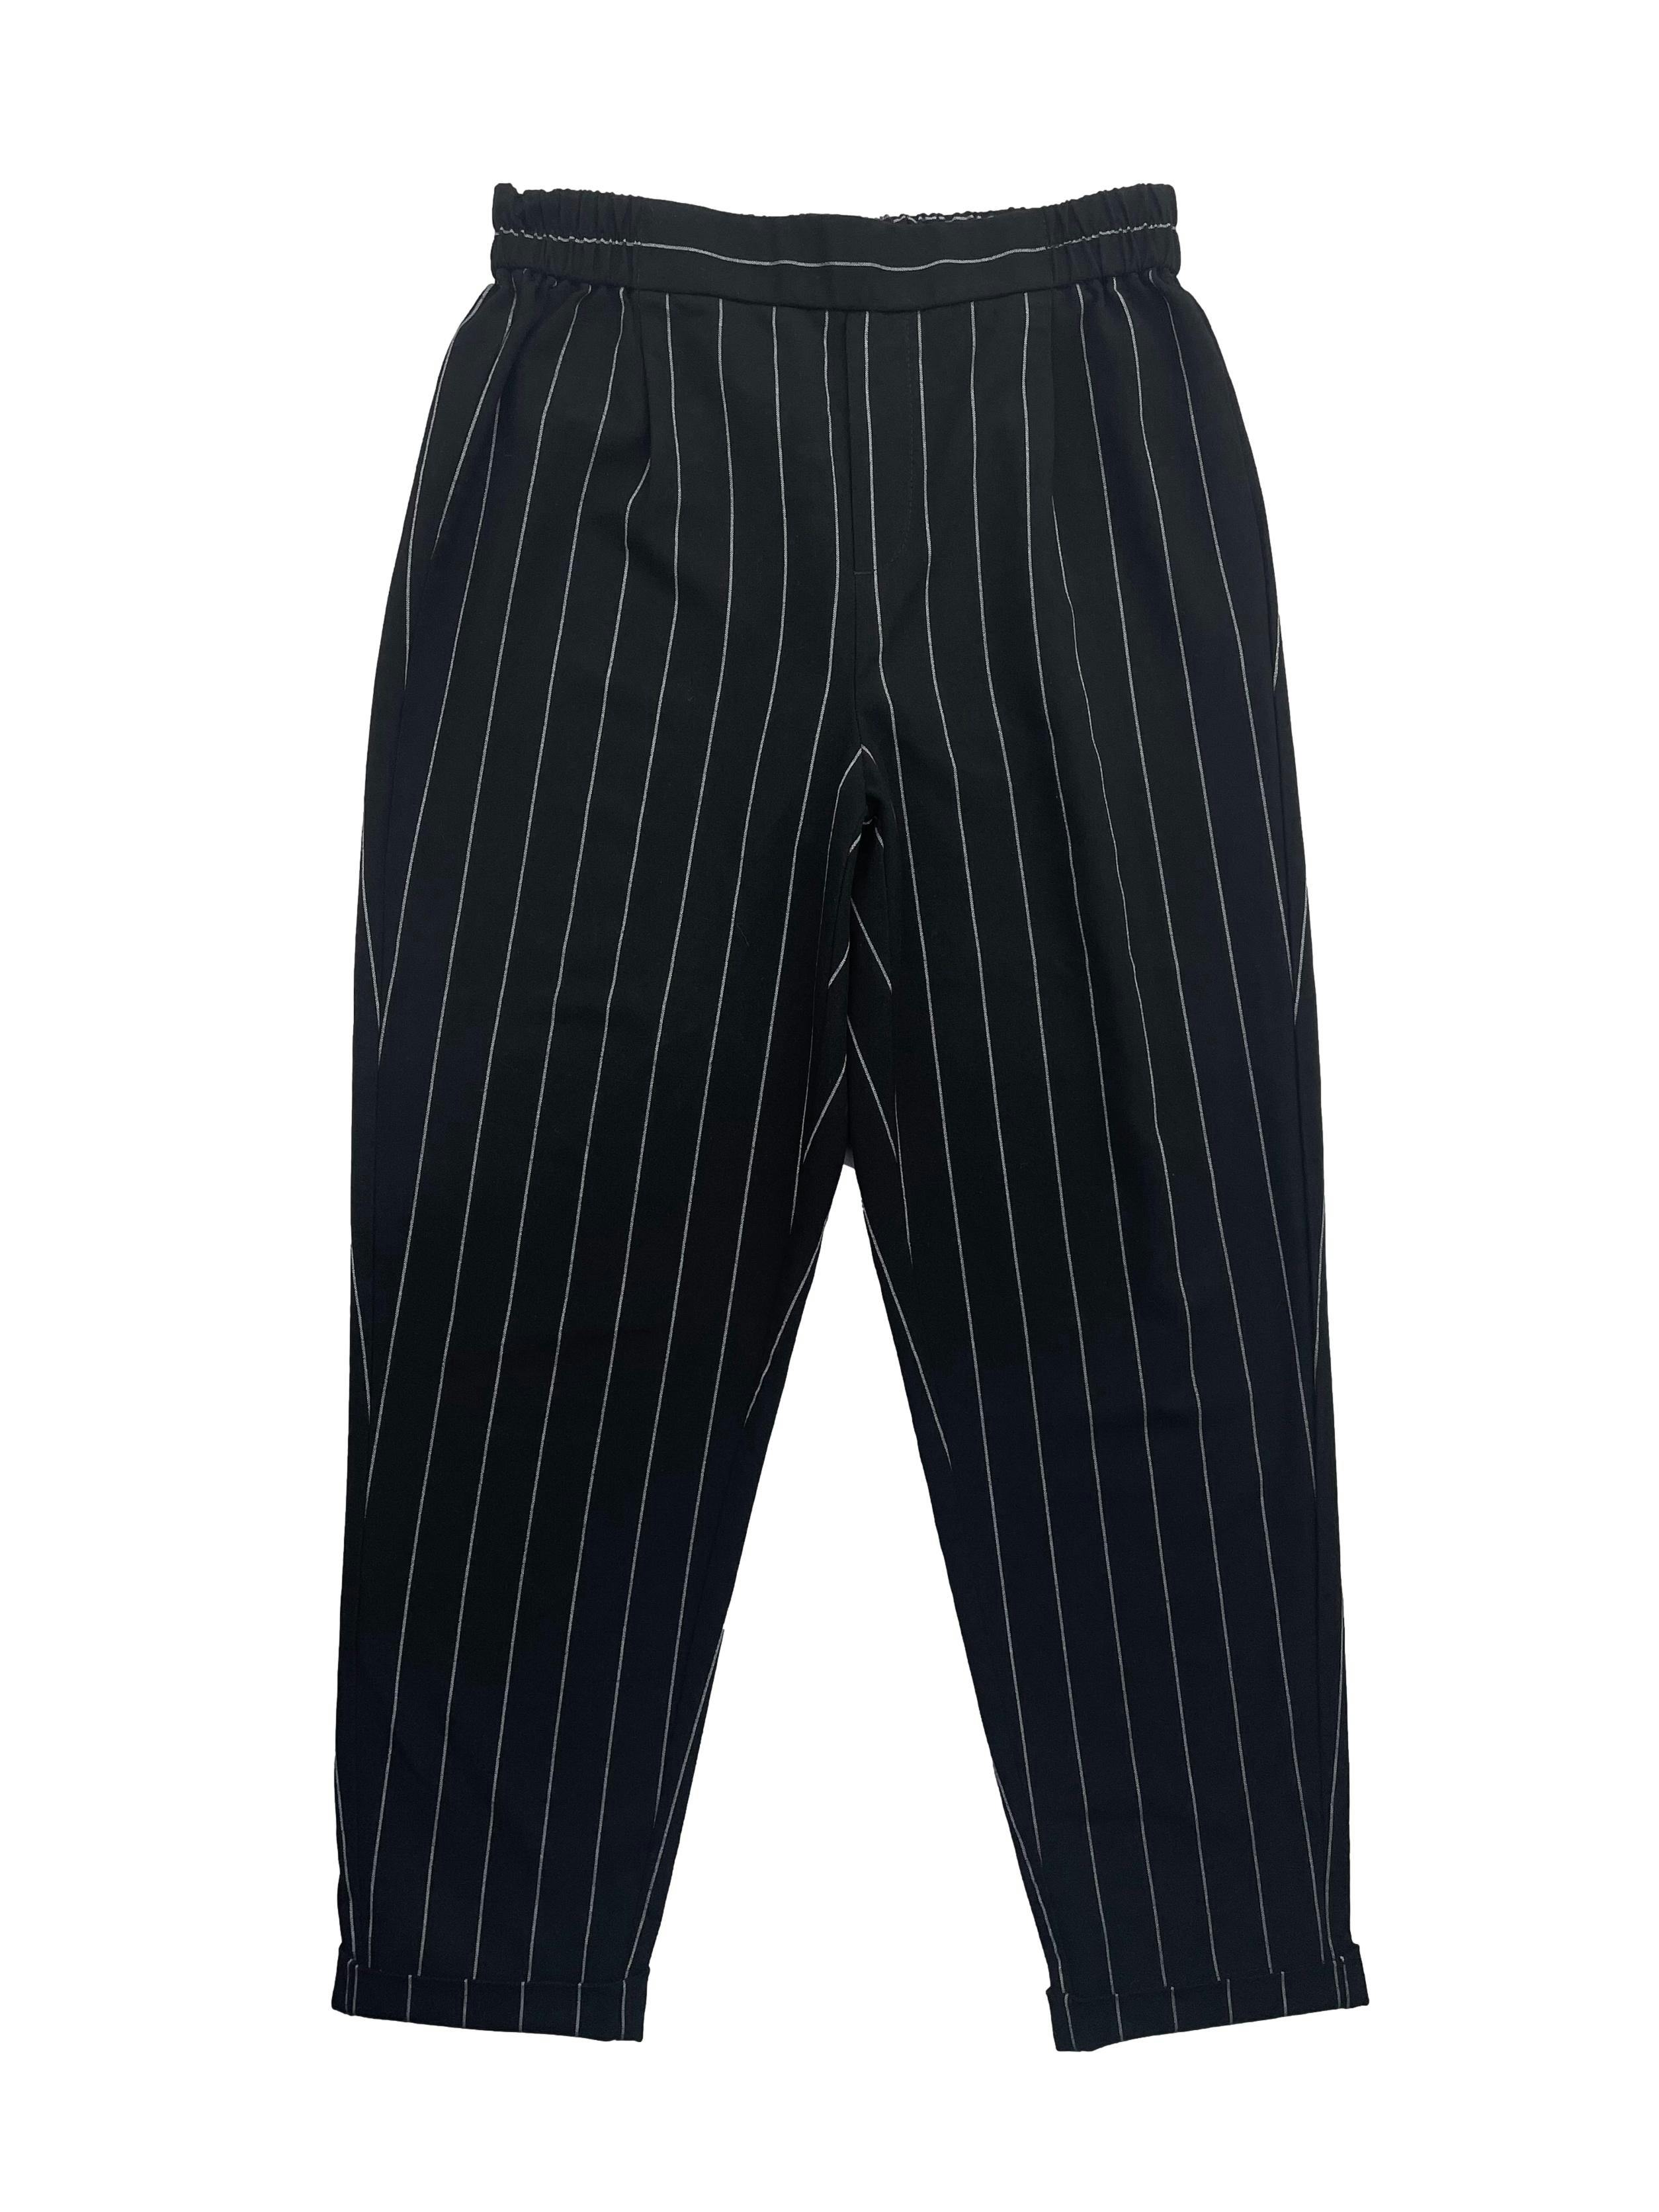 Pantalón Sybilla negro con rayas blancas, con elástico en la pretina Cintura: 66cm (sin estirar), Tiro 28cm Largo: 91cm